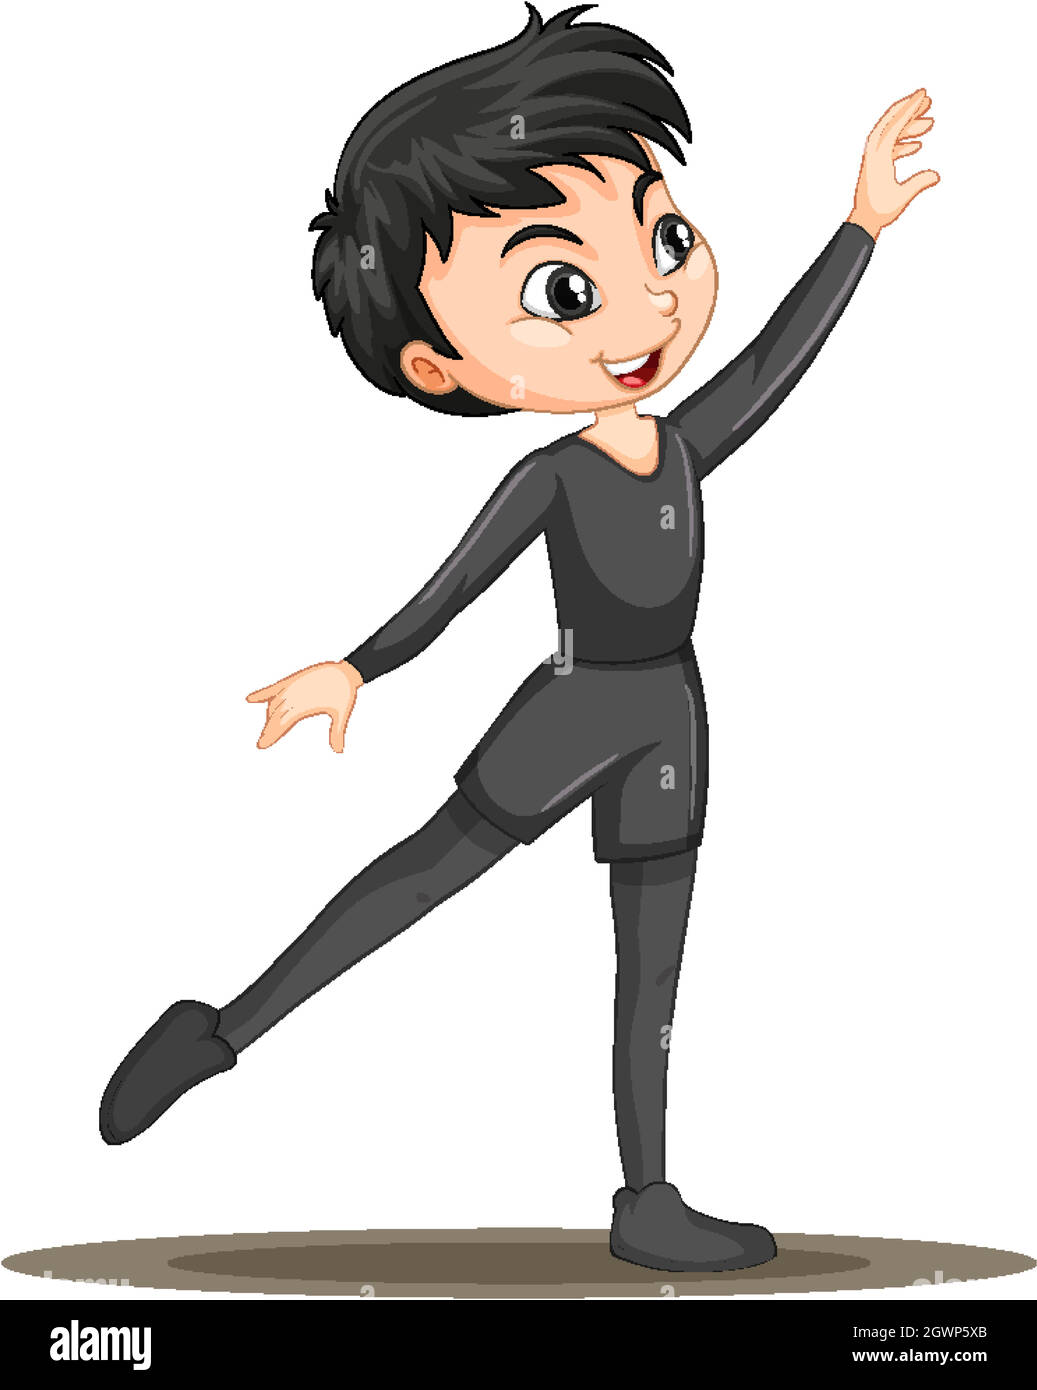 Personnage de dessin animé de danseur de ballet de garçon isolé Illustration de Vecteur